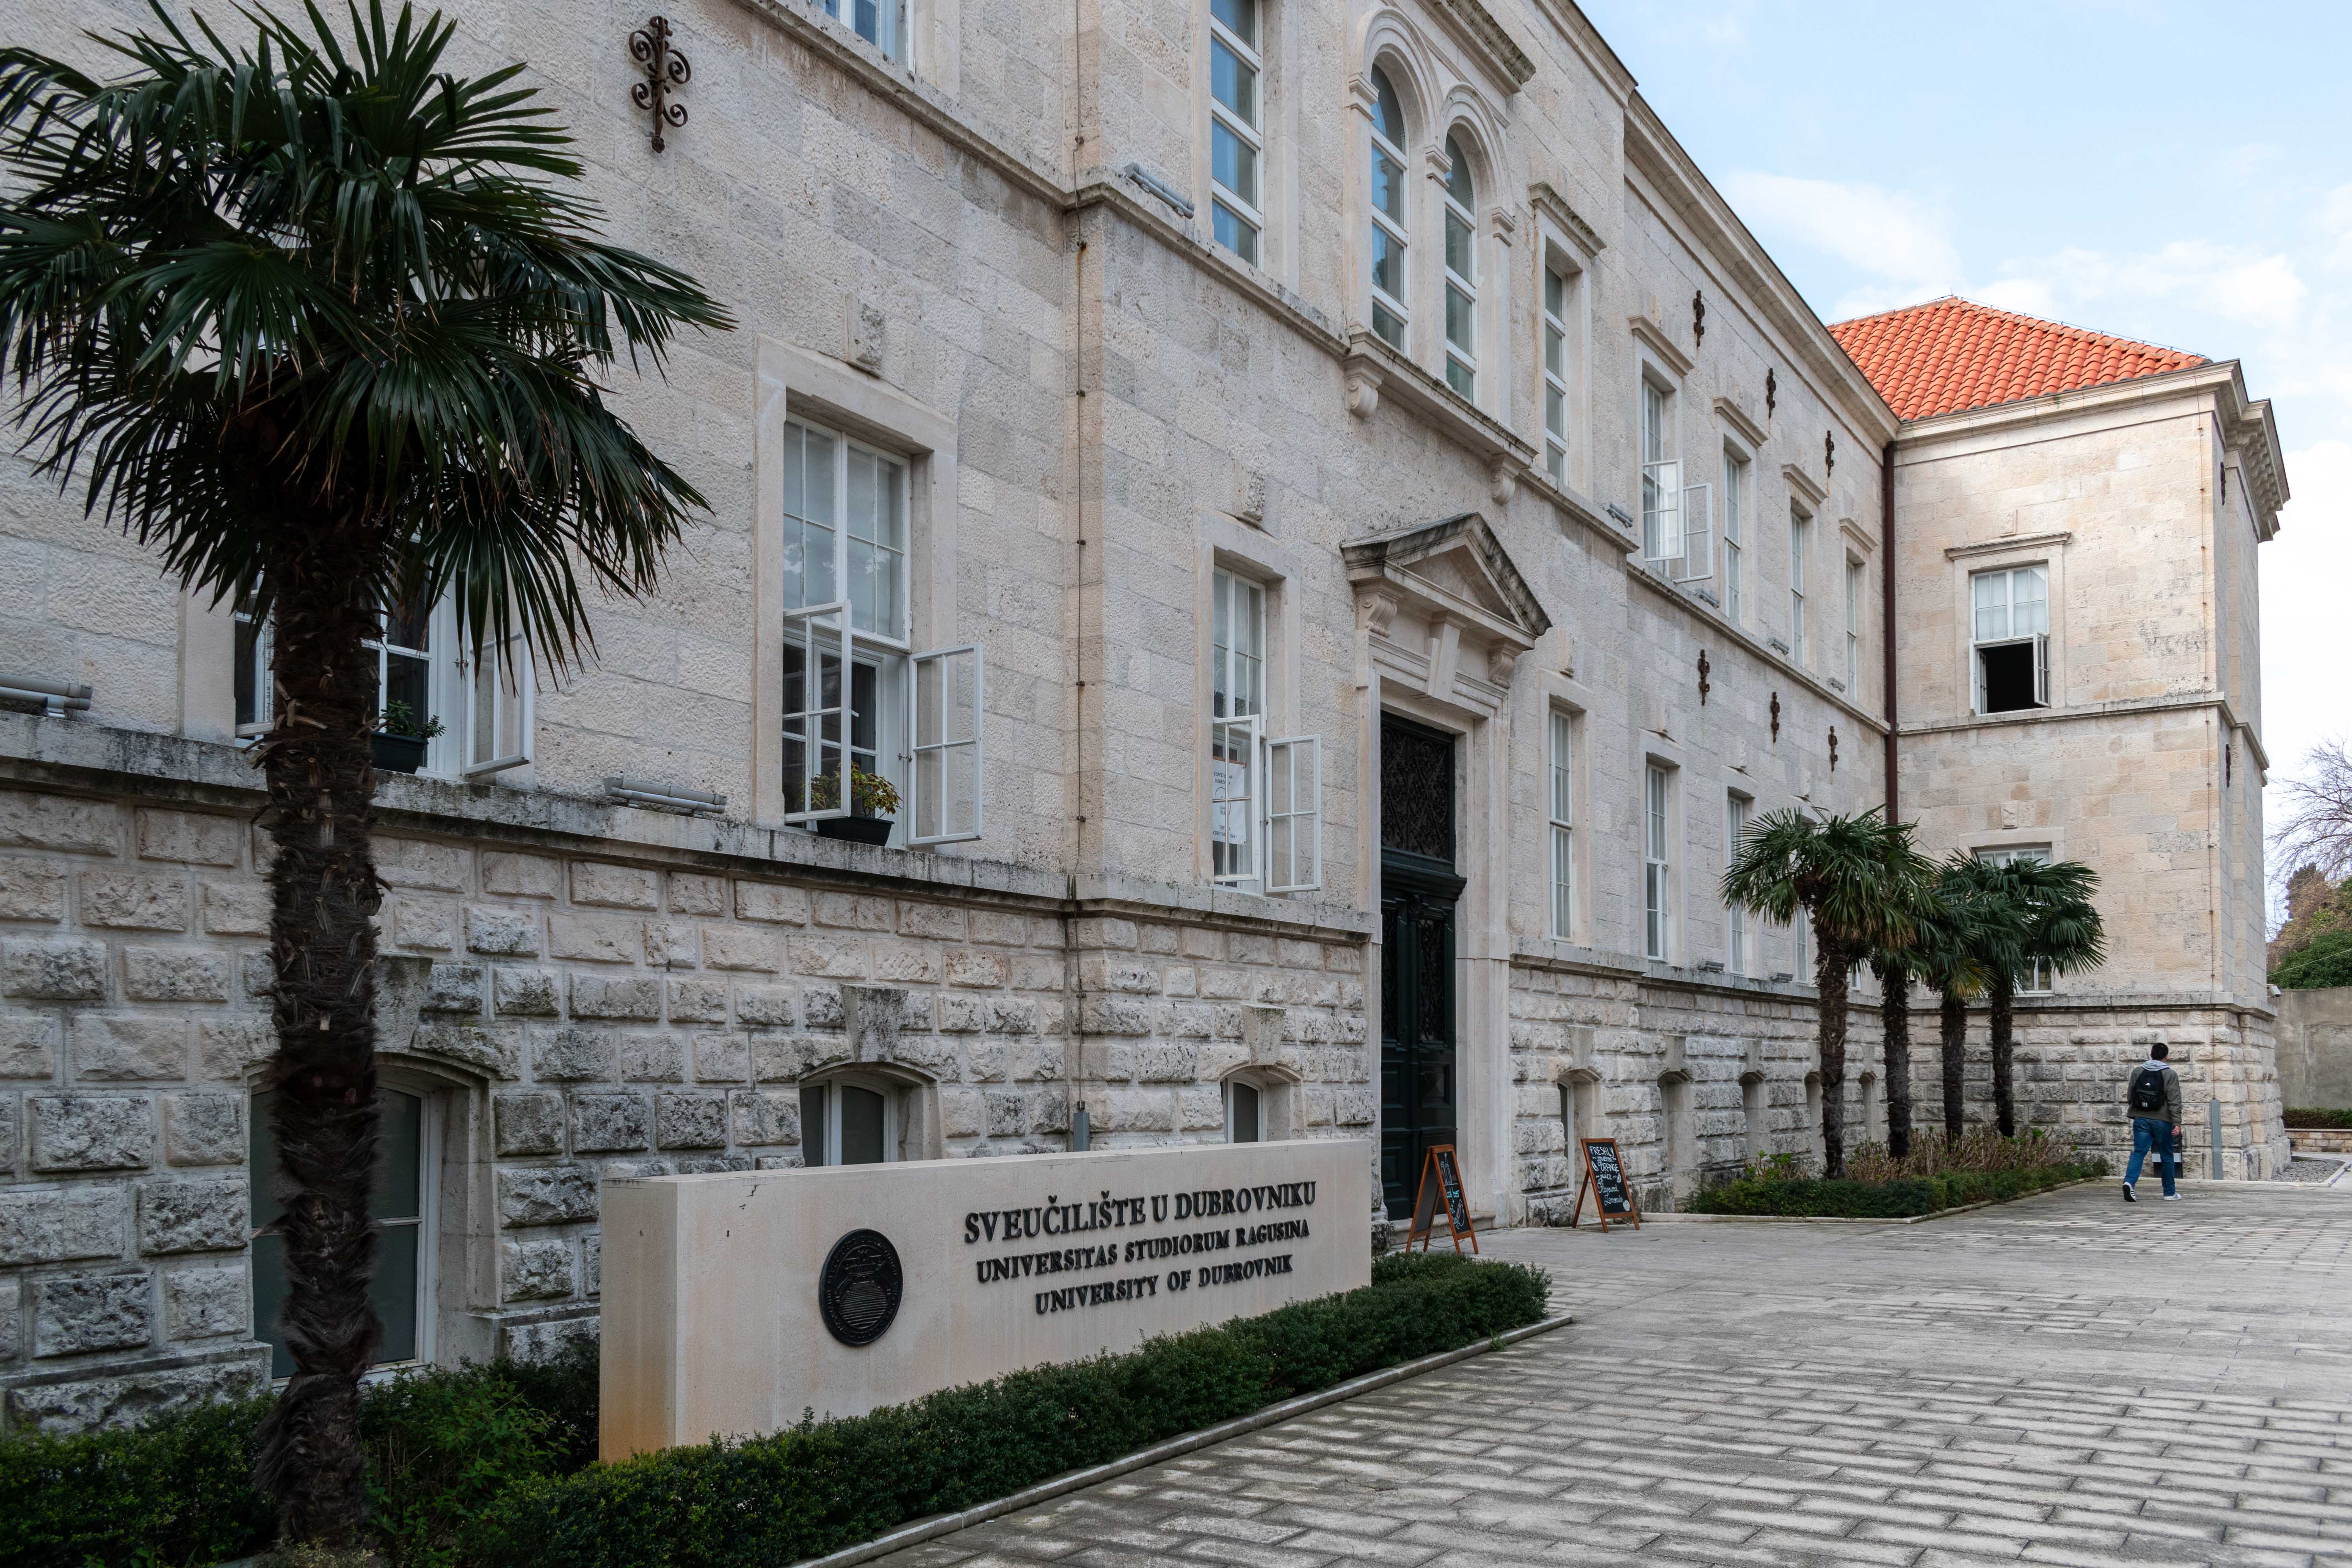 Zgrada Sveučilišnog kampusa u Dubrovniku, Sveučilište u Dubrovniku